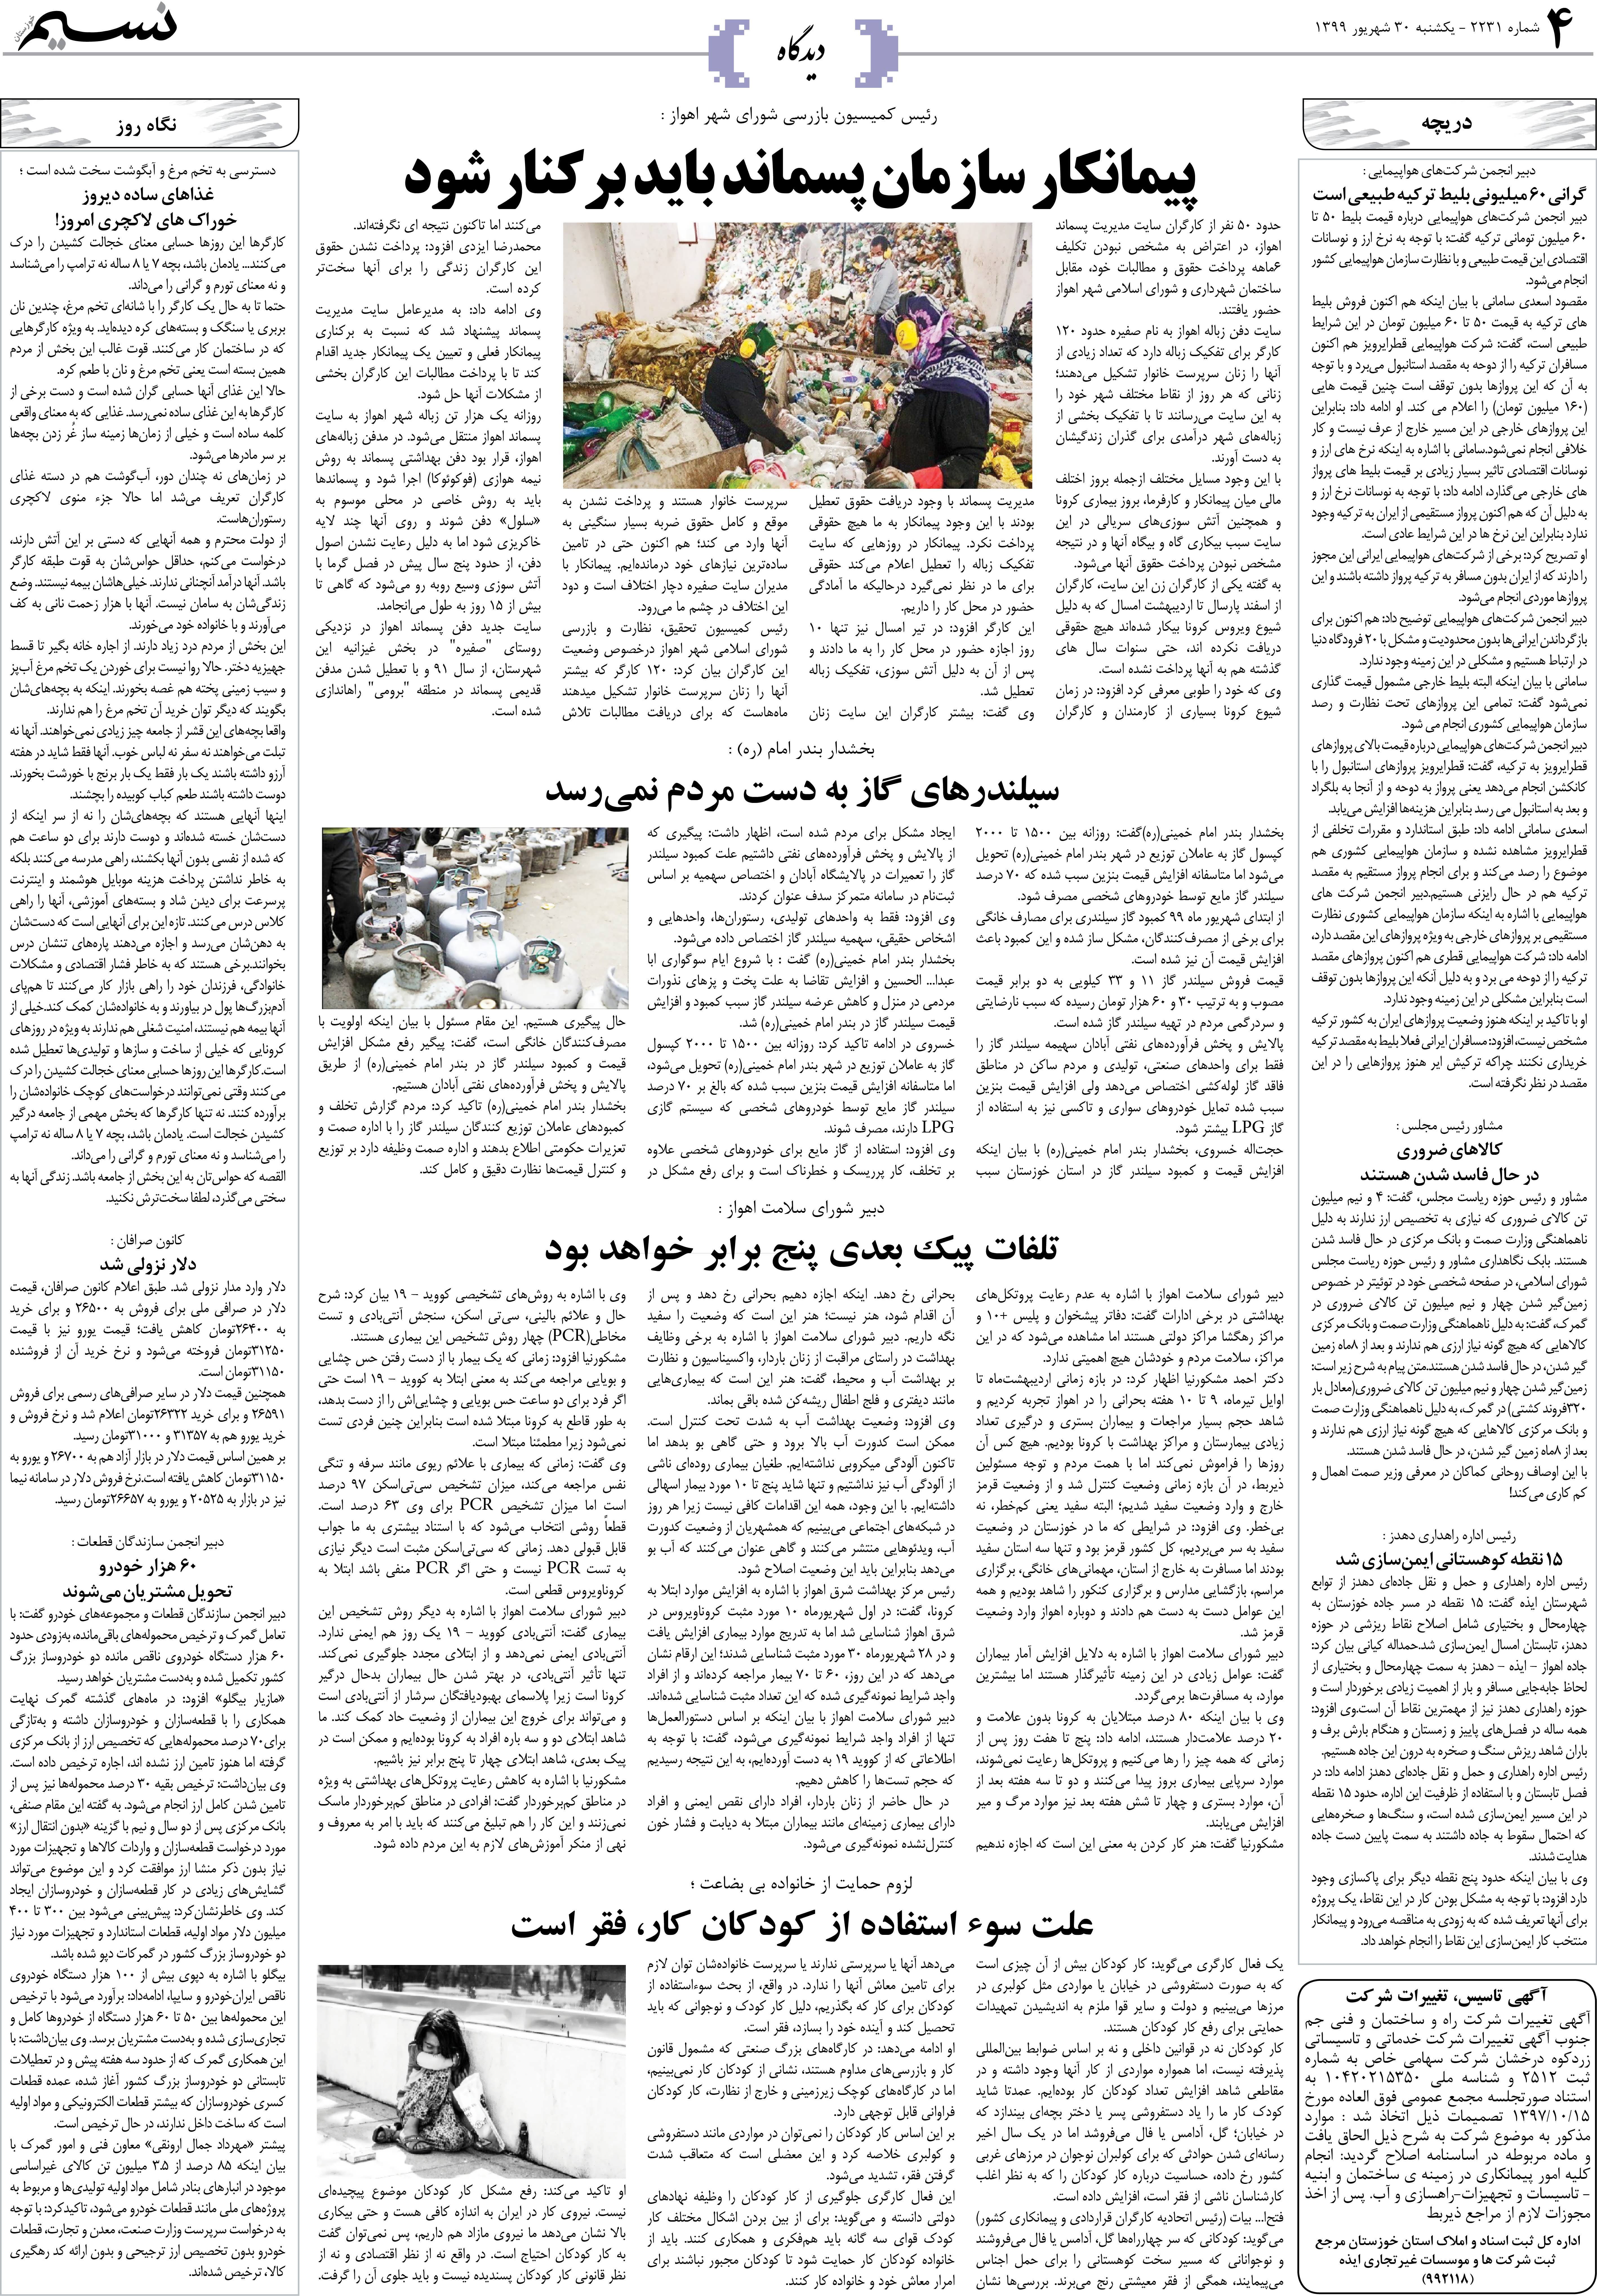 صفحه دیدگاه روزنامه نسیم شماره 2231